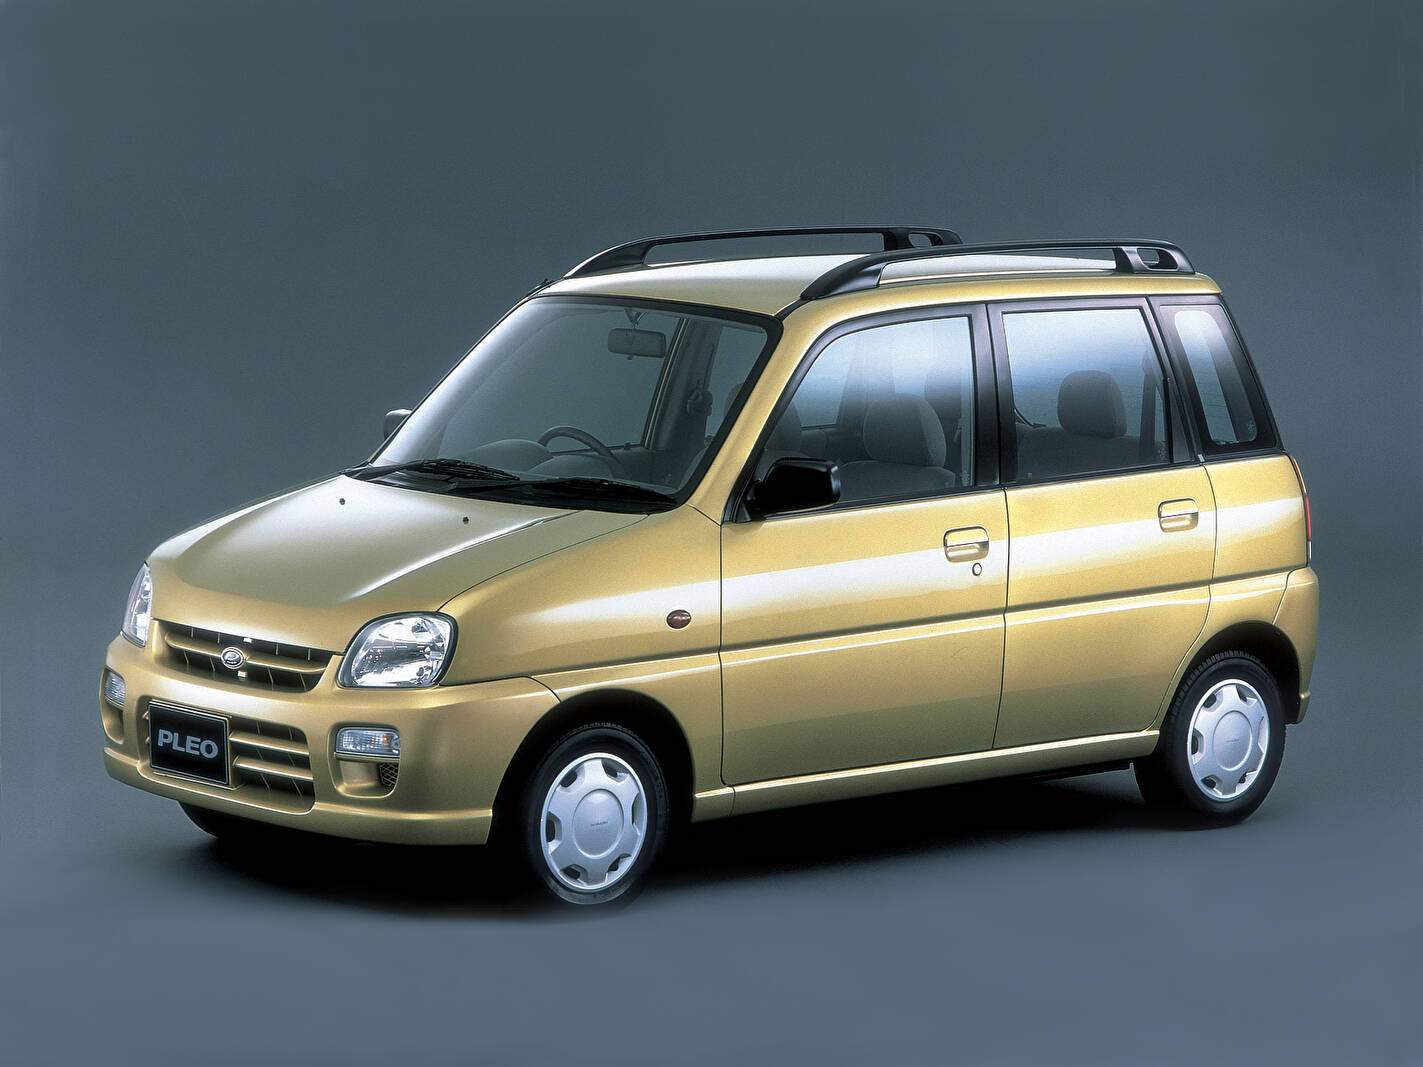 Subaru Pleo 0.7 (58 ch) (1998-2009),  ajouté par fox58